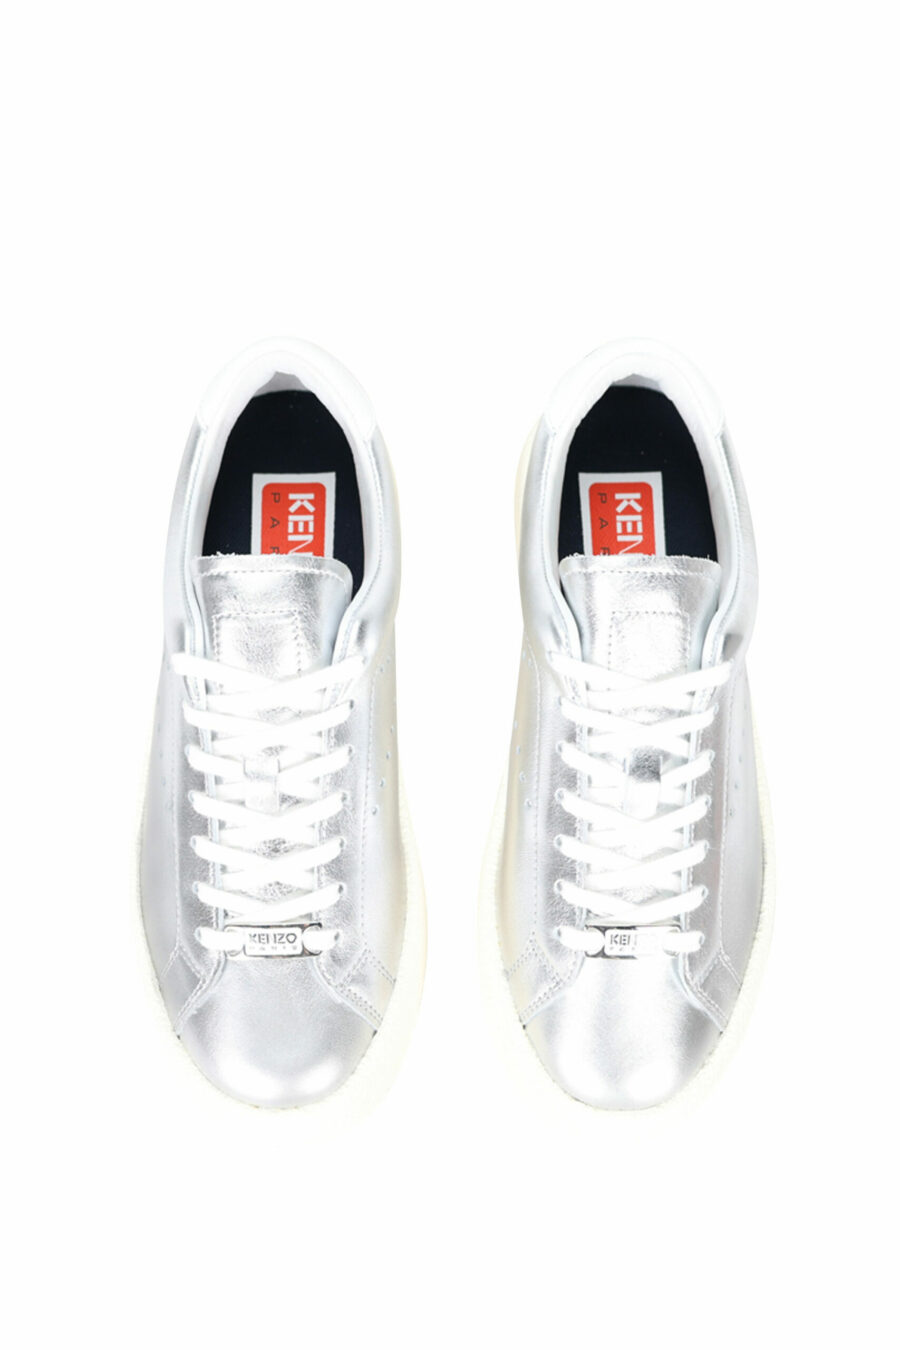 Silberne Schuhe mit schwarzem Mini-Logo - 3612230556461 4 skaliert